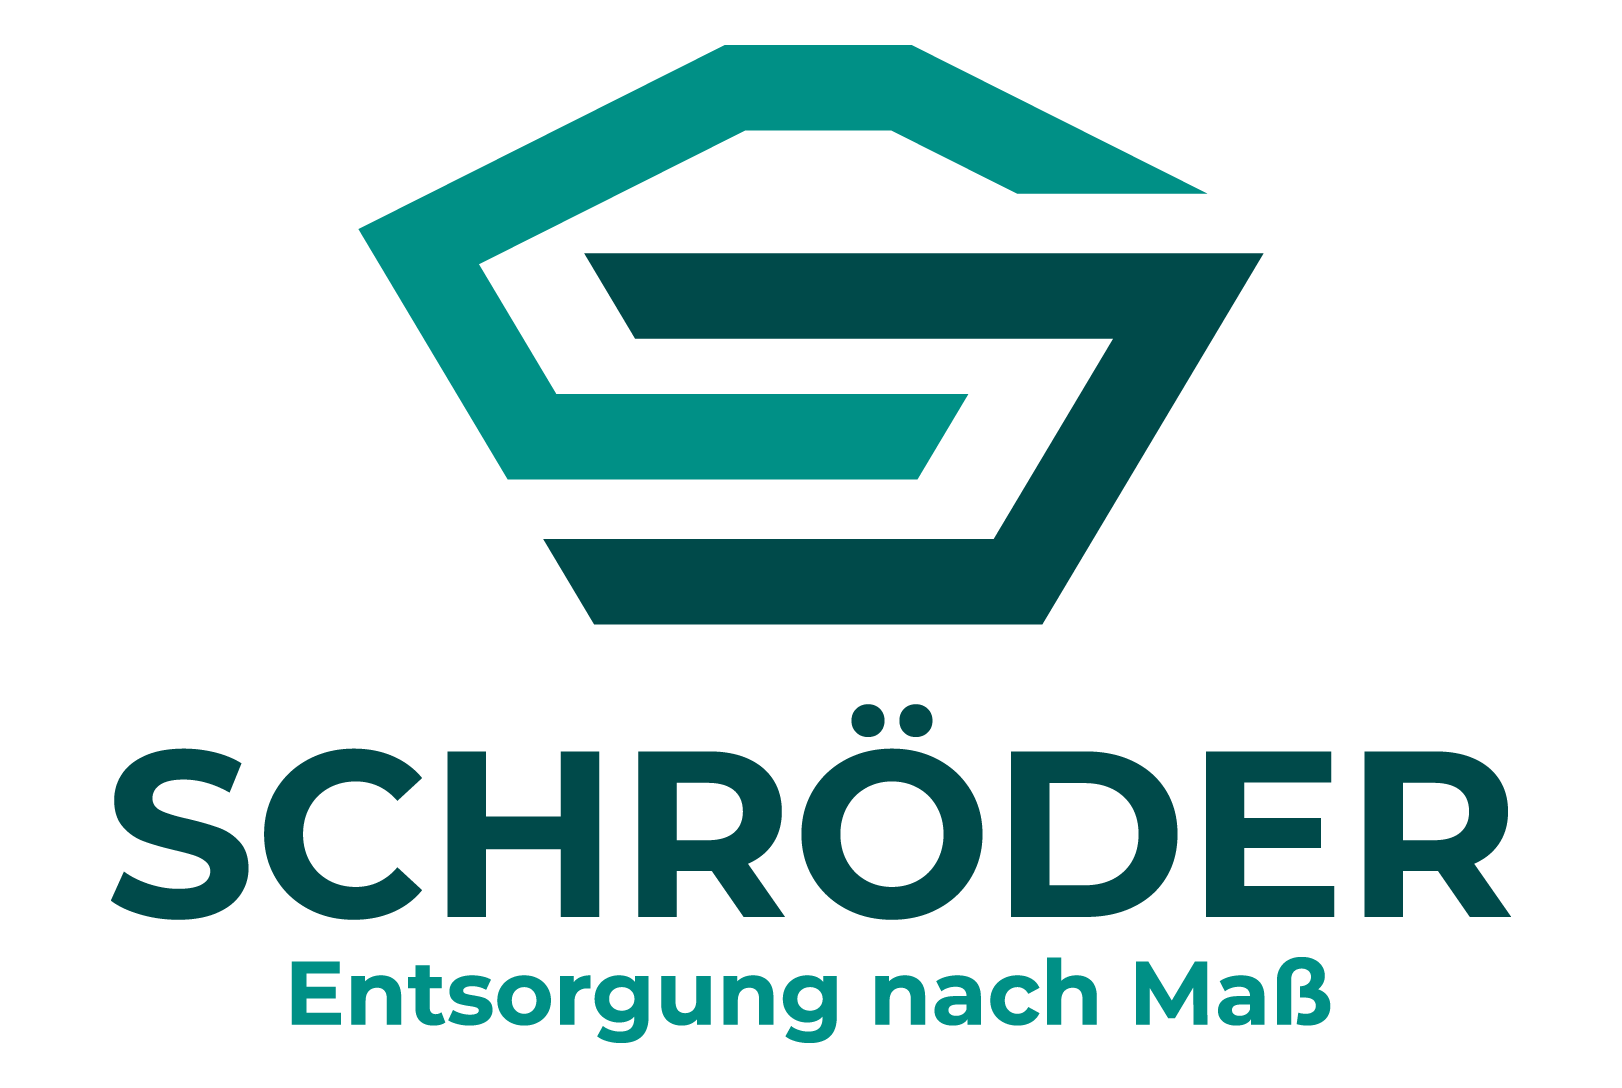 Unternehmenslogo der Schröder GmbH, steht für verlässliche Qualität und Fachkenntnis in Entsorgung und Logistik.